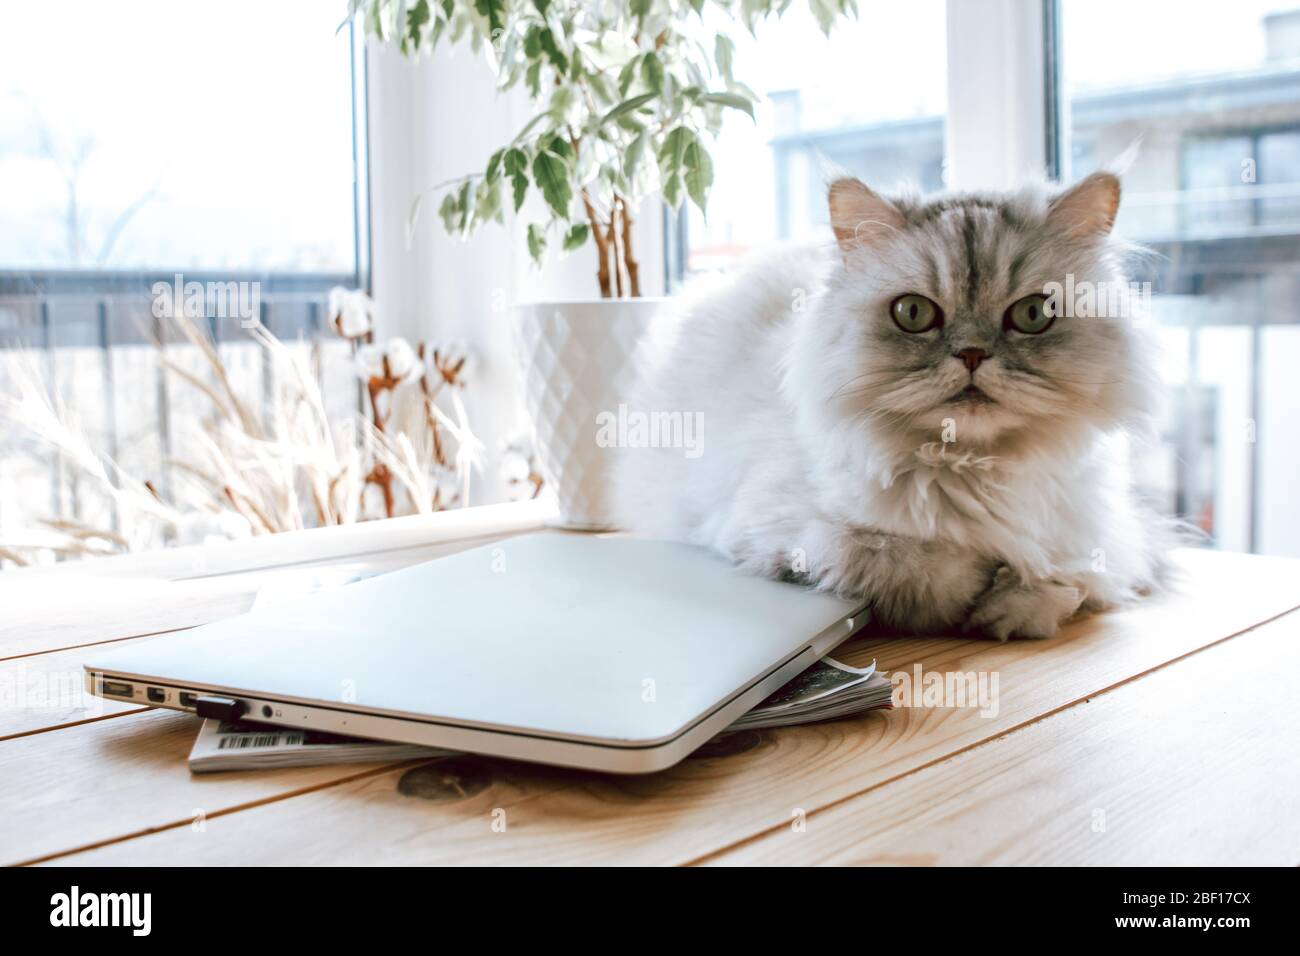 Süße und flauschige Katze, die auf einem Tisch neben einem Laptop liegt. Zimmer voller Sonnenlicht. Stockfoto